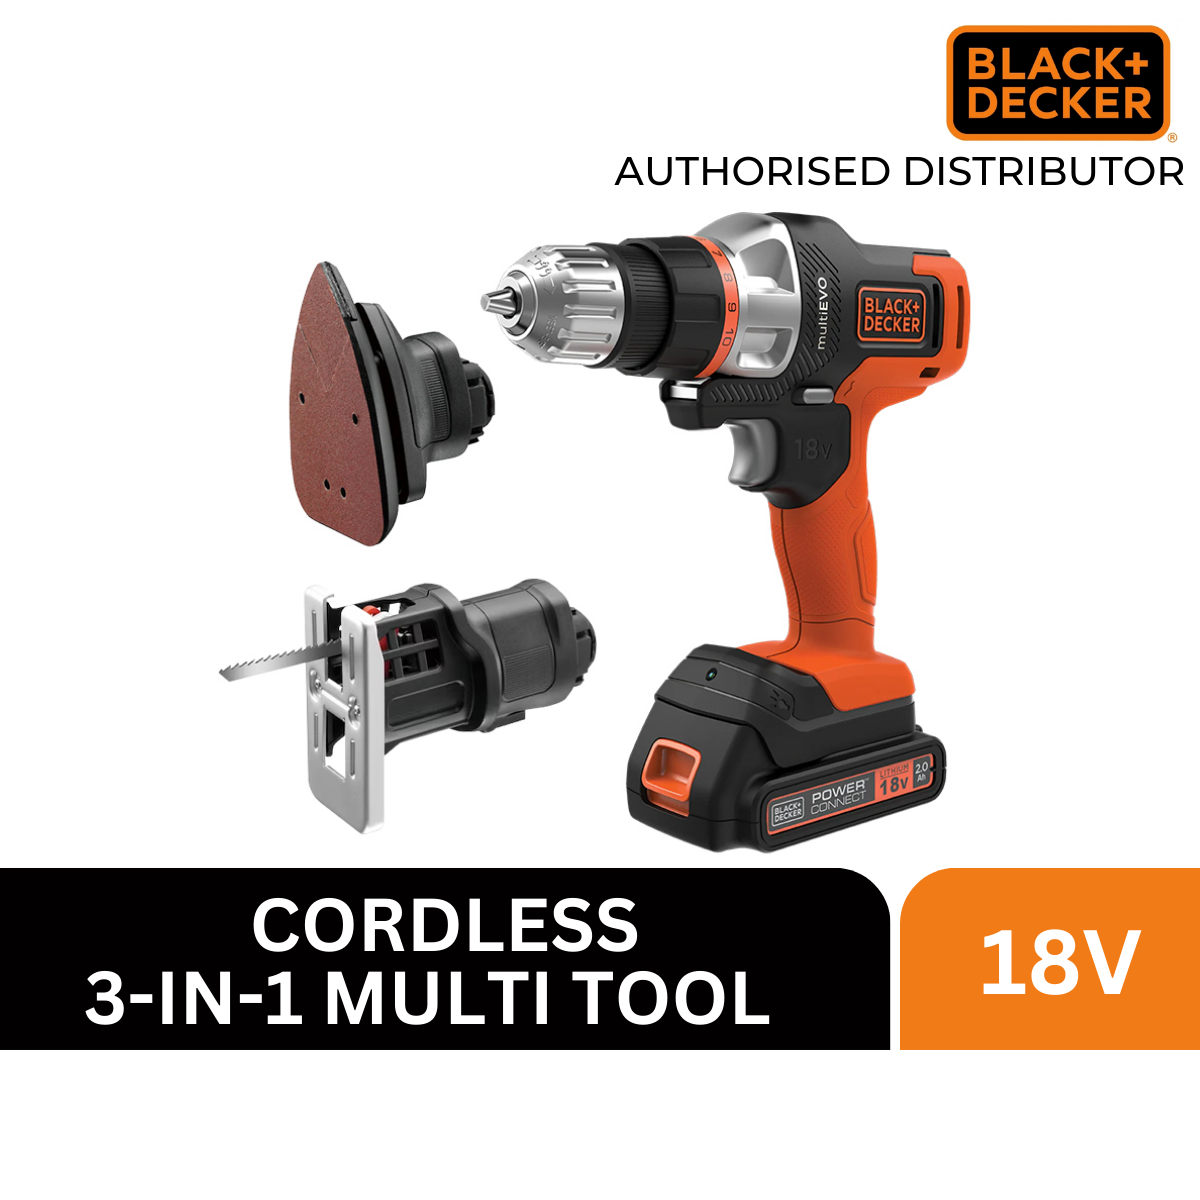 18V Cordless Multievo Multi-Tool